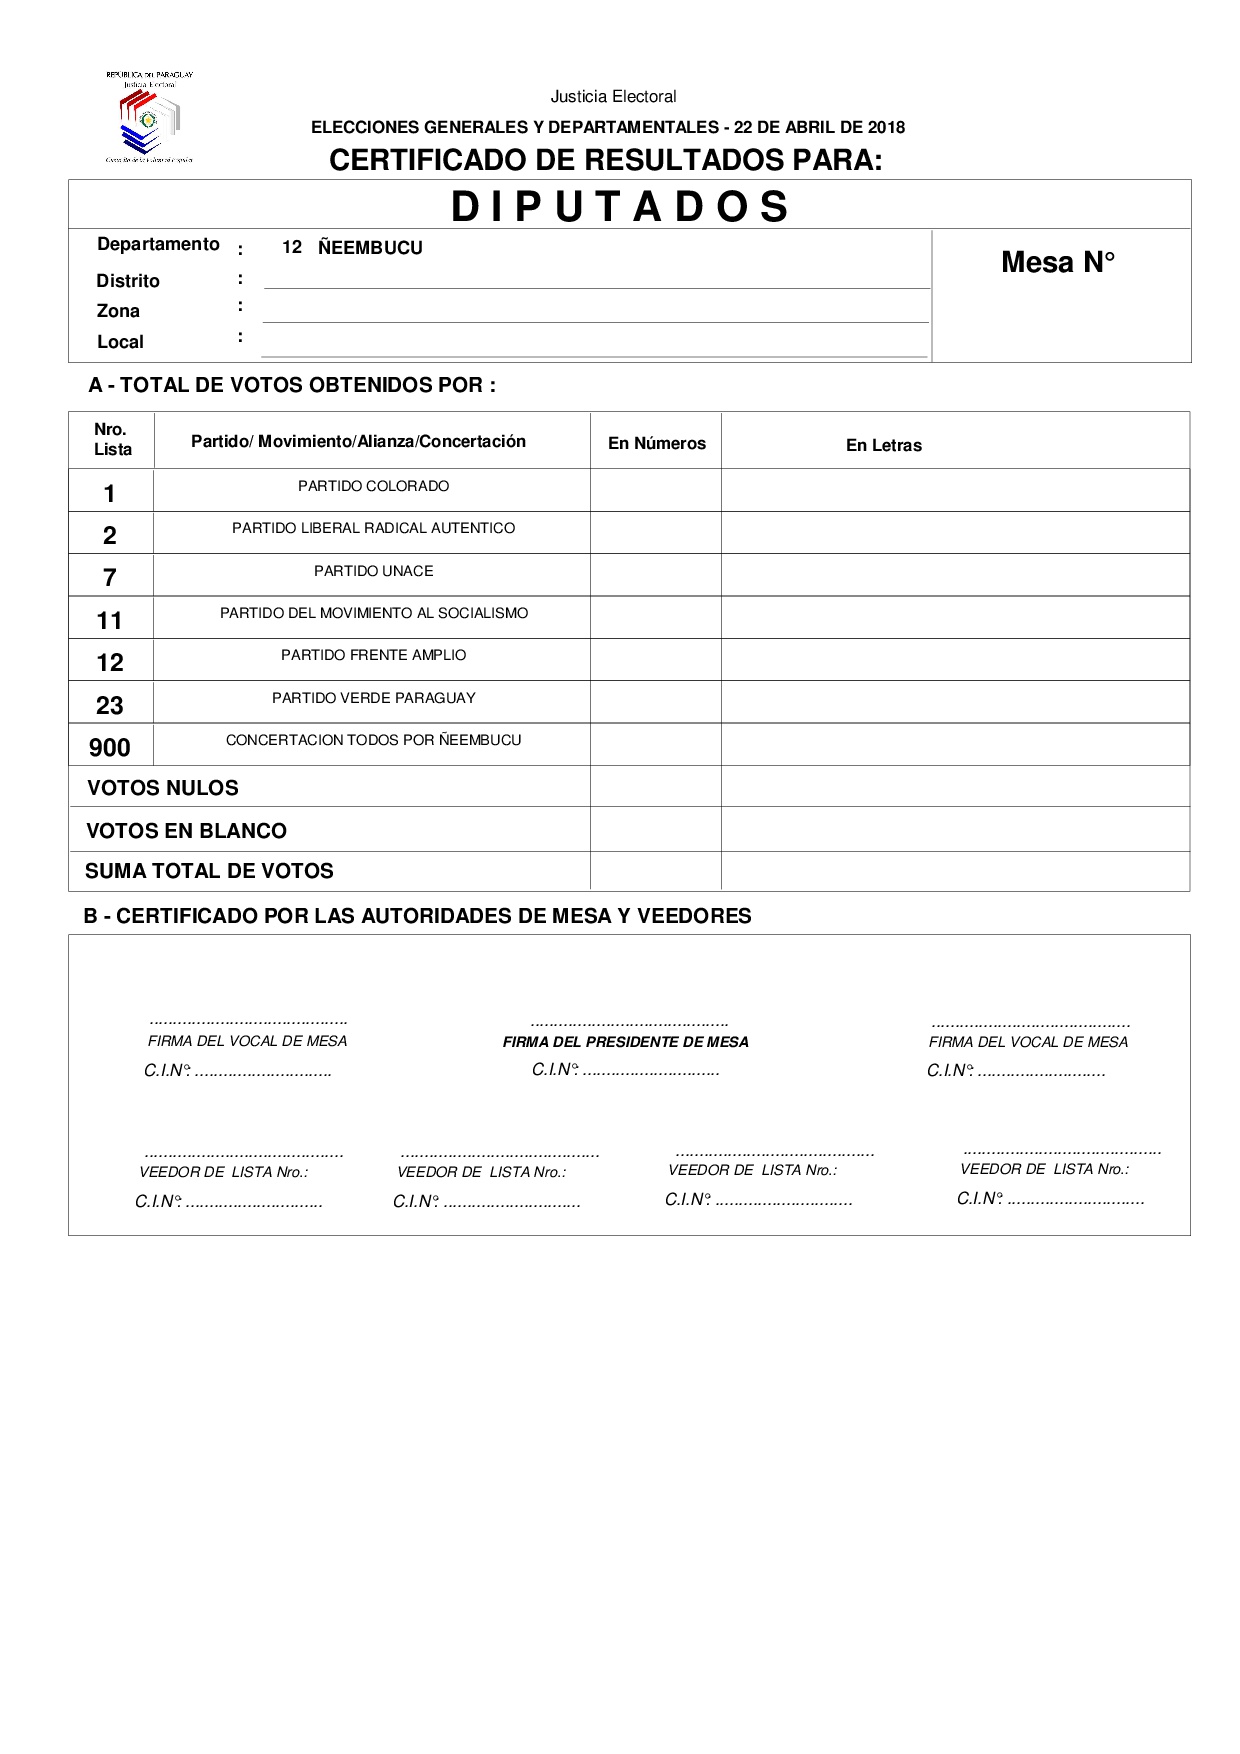 Certificado de Resultados Para Diputados de ÑEEMBUCU